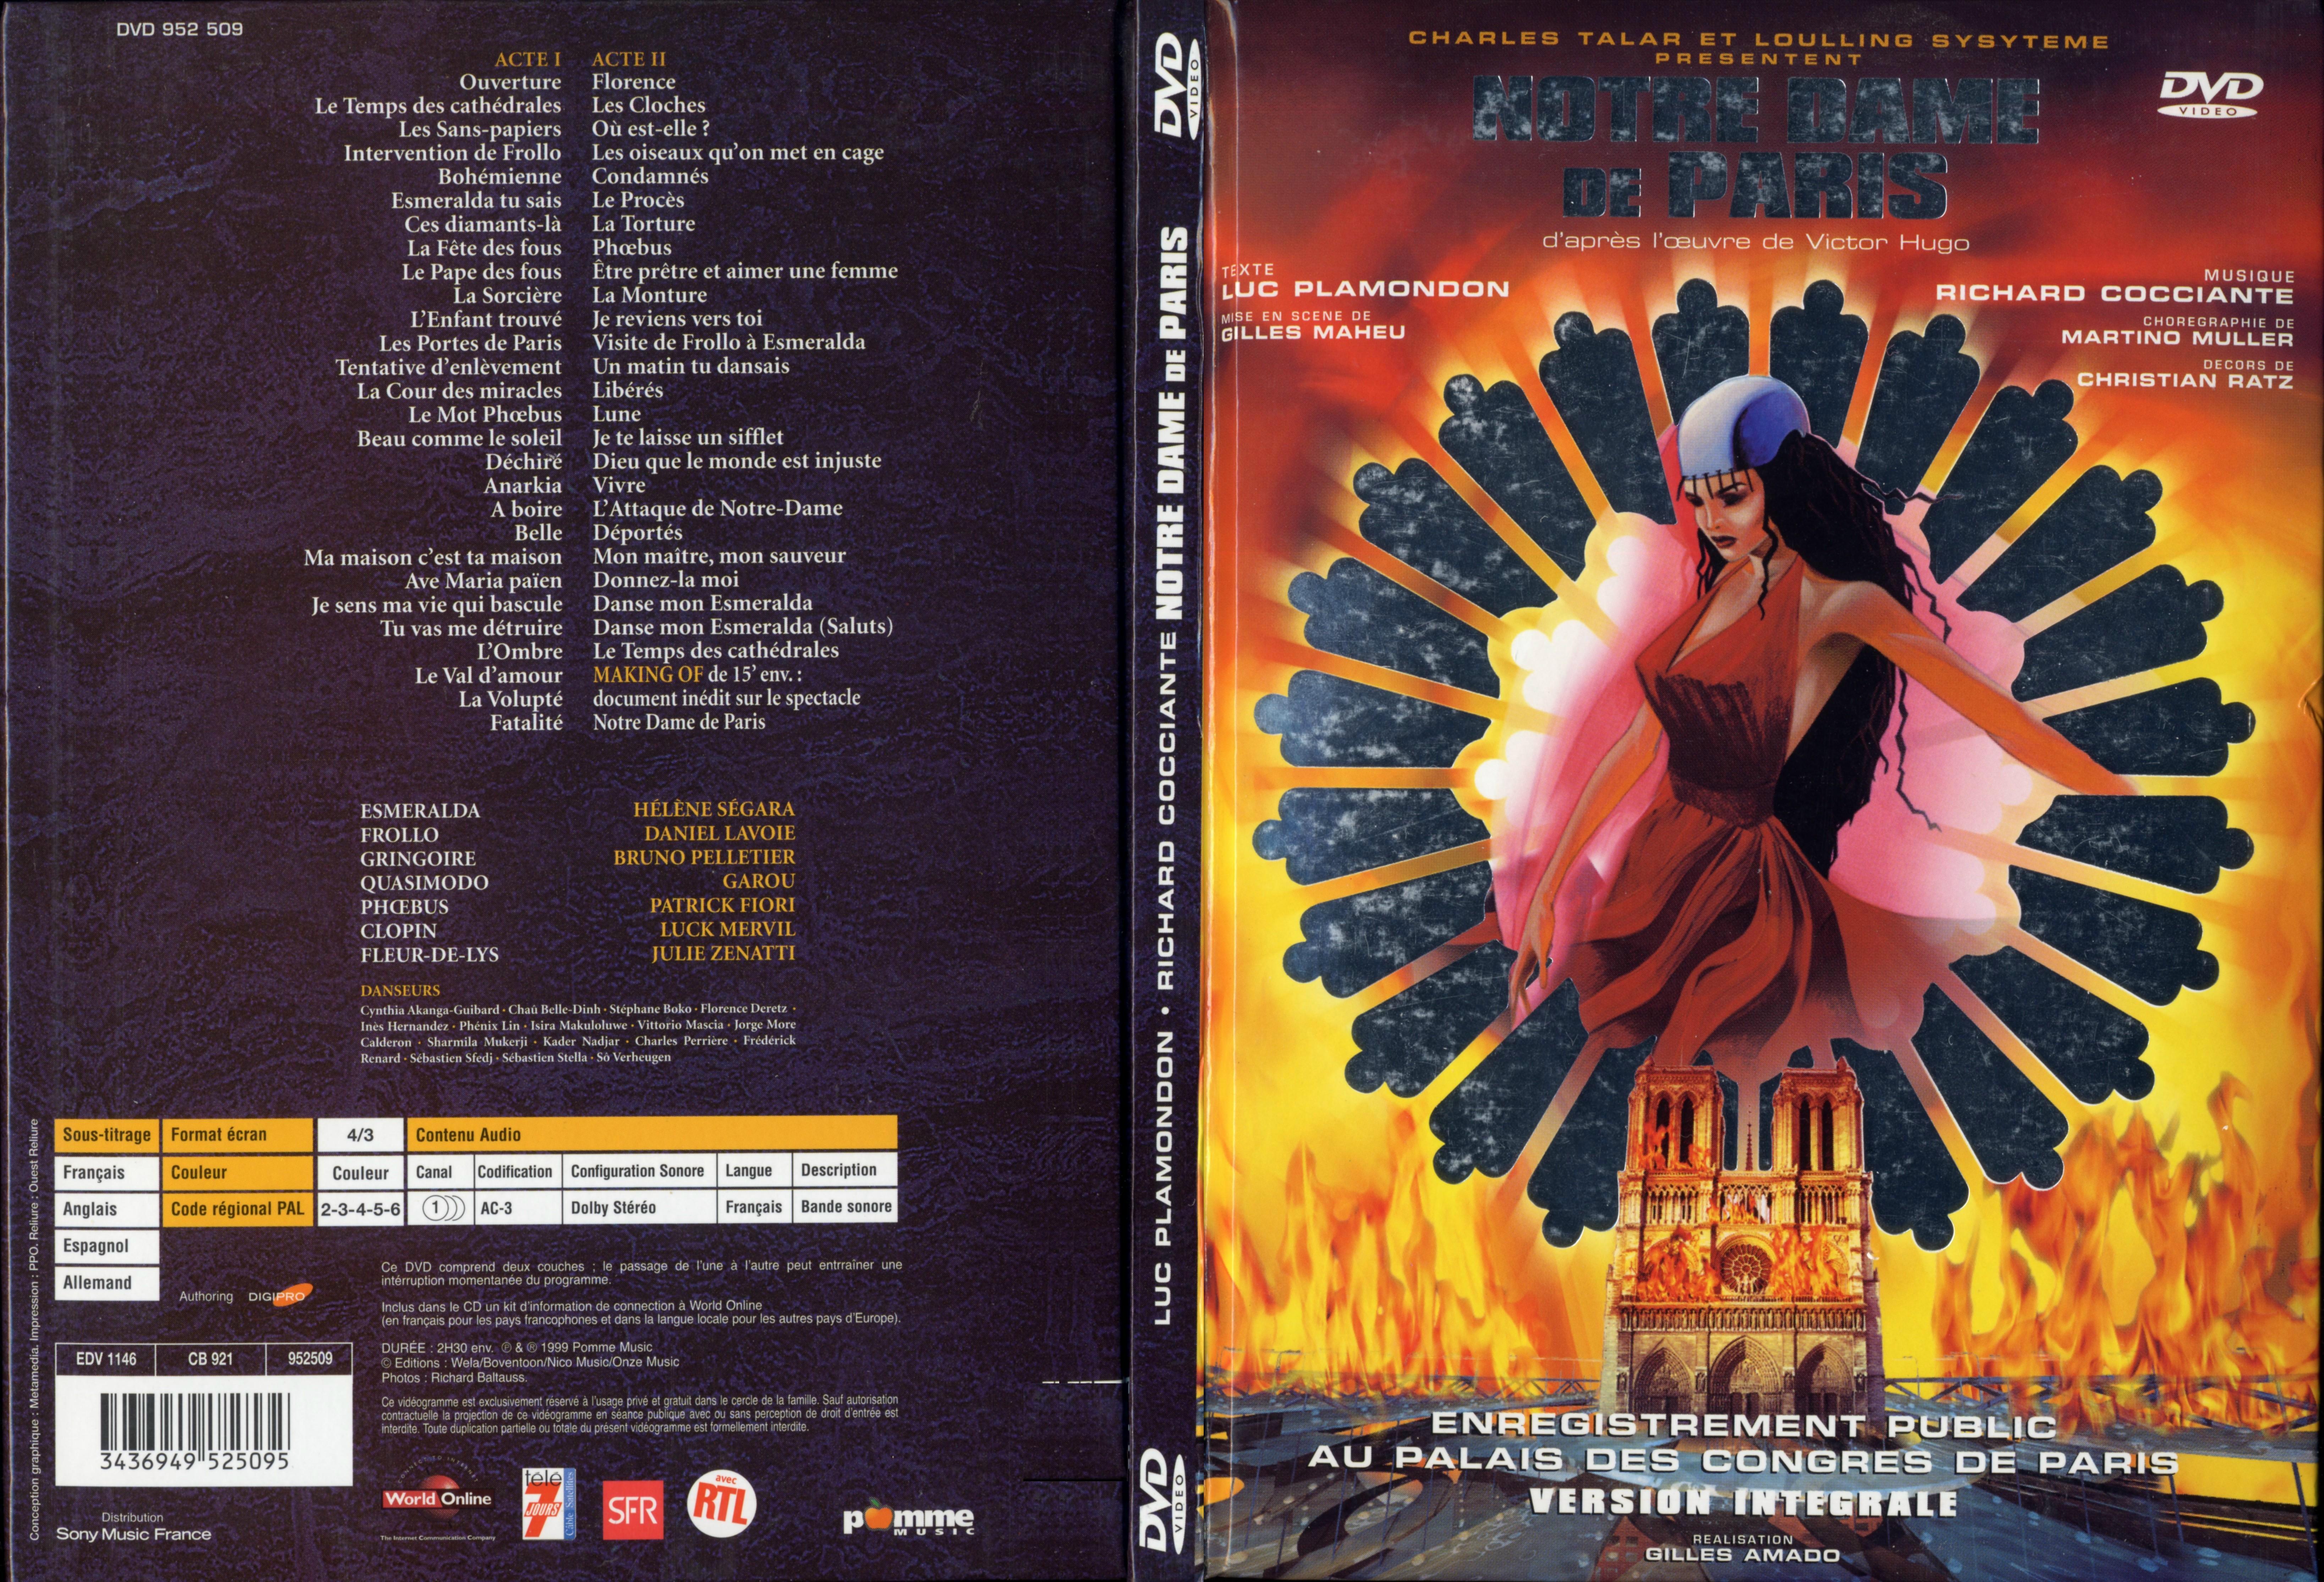 Jaquette DVD Notre dame de paris (spectacle) - SLIM